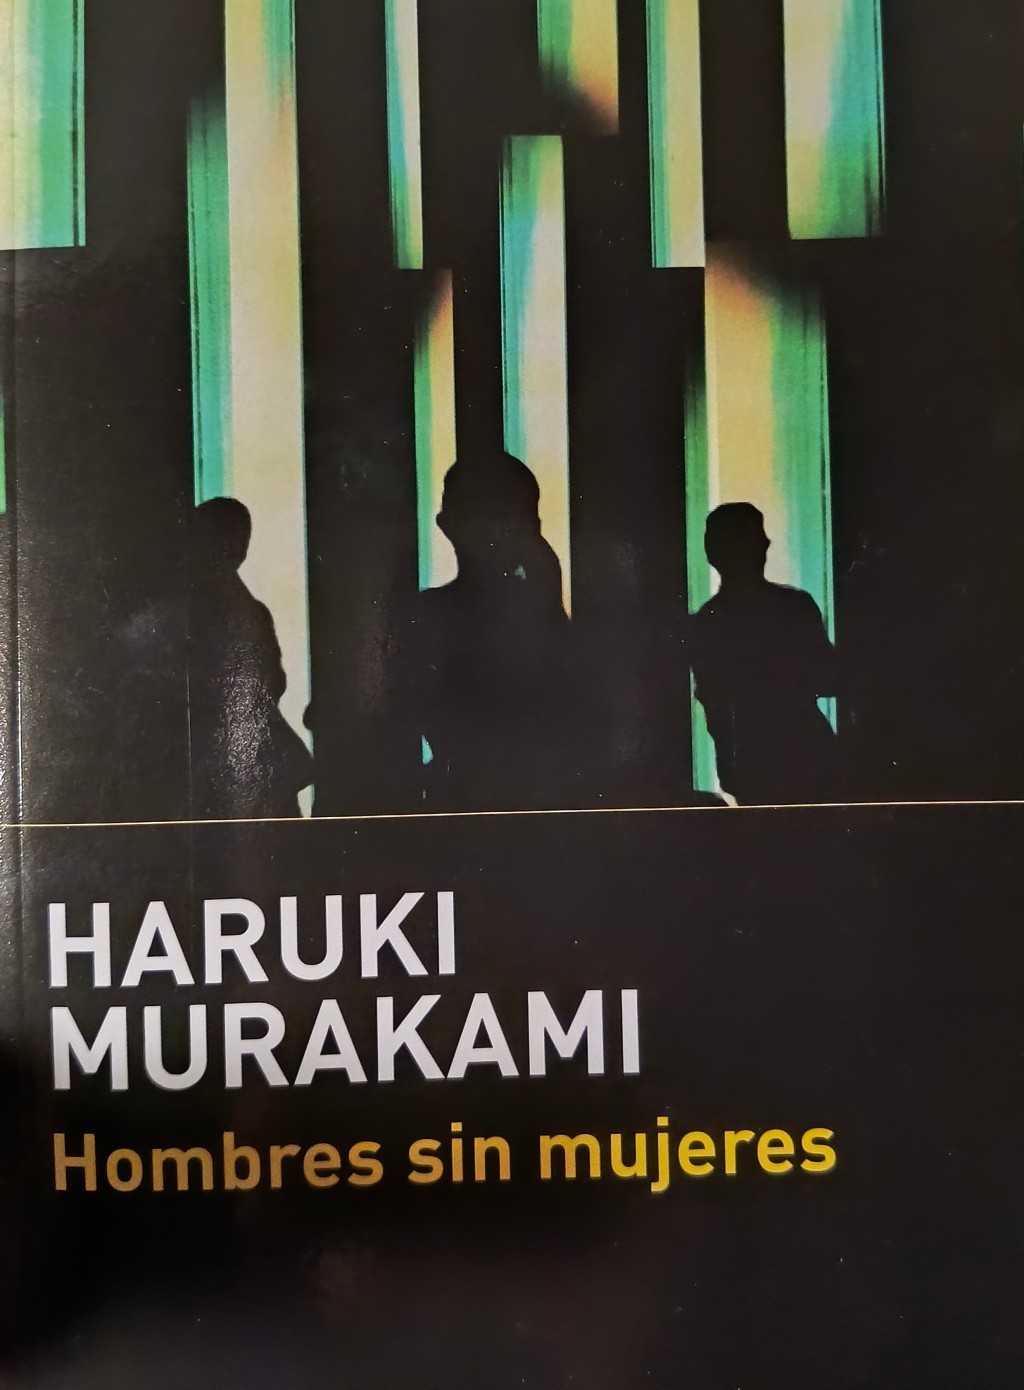 Podcast: Hombres sin mujeres (Murakami)